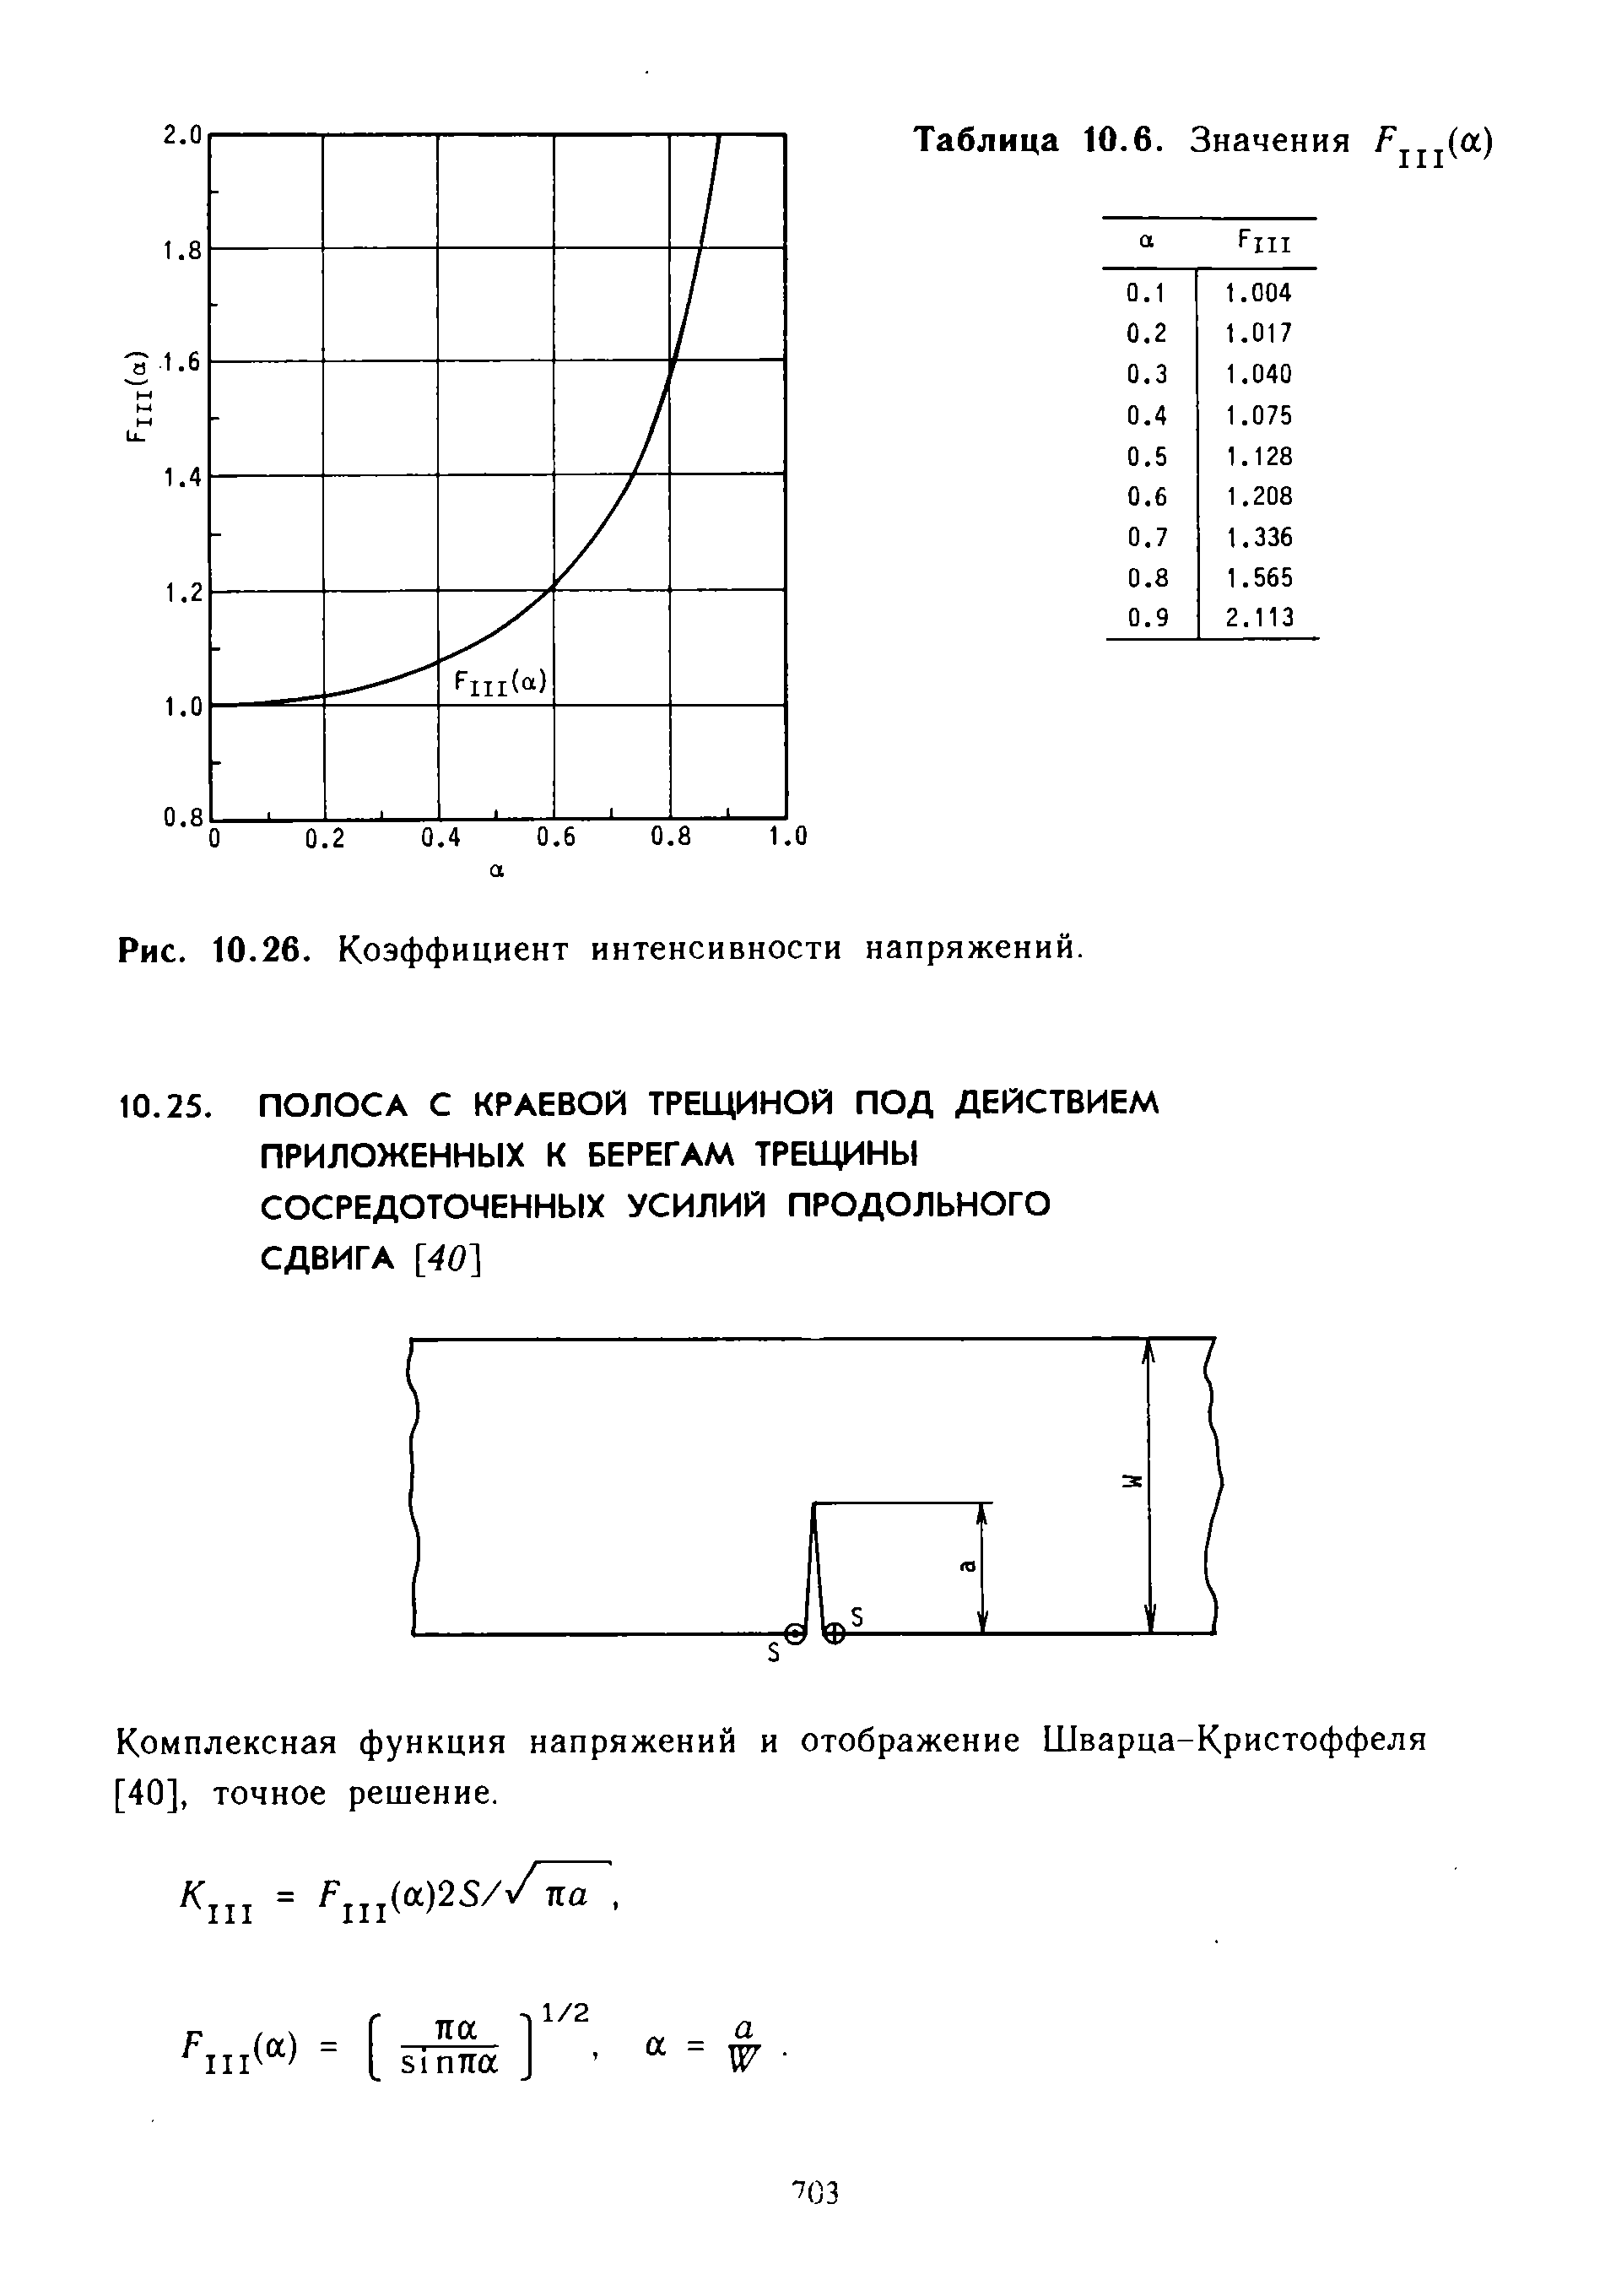 Комплексная функция напряжений и отображение Шварца-Кристоффеля [40], точное решение.
